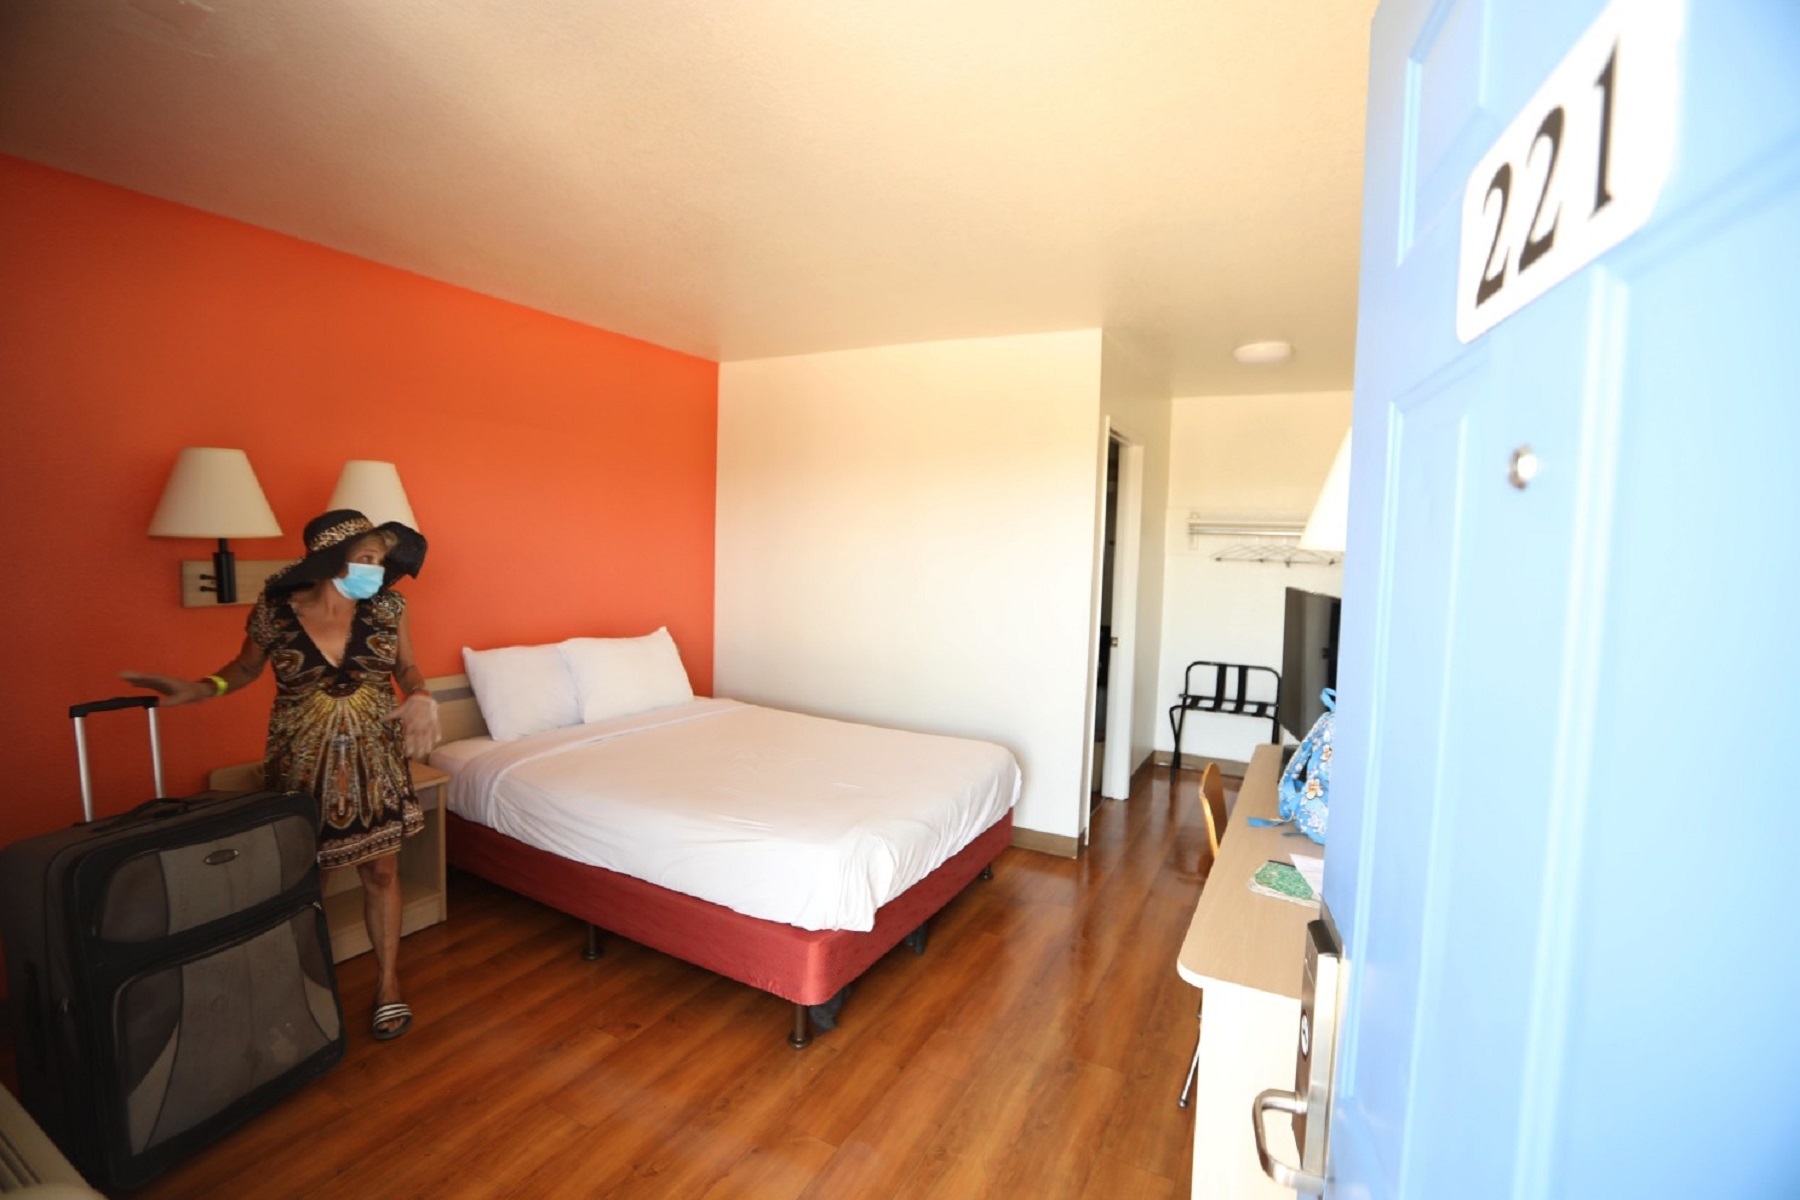 Σιάτλ Σαν Φρανσίσκο: Άστεγοι σε ξενοδοχεία λόγω της πανδημίας